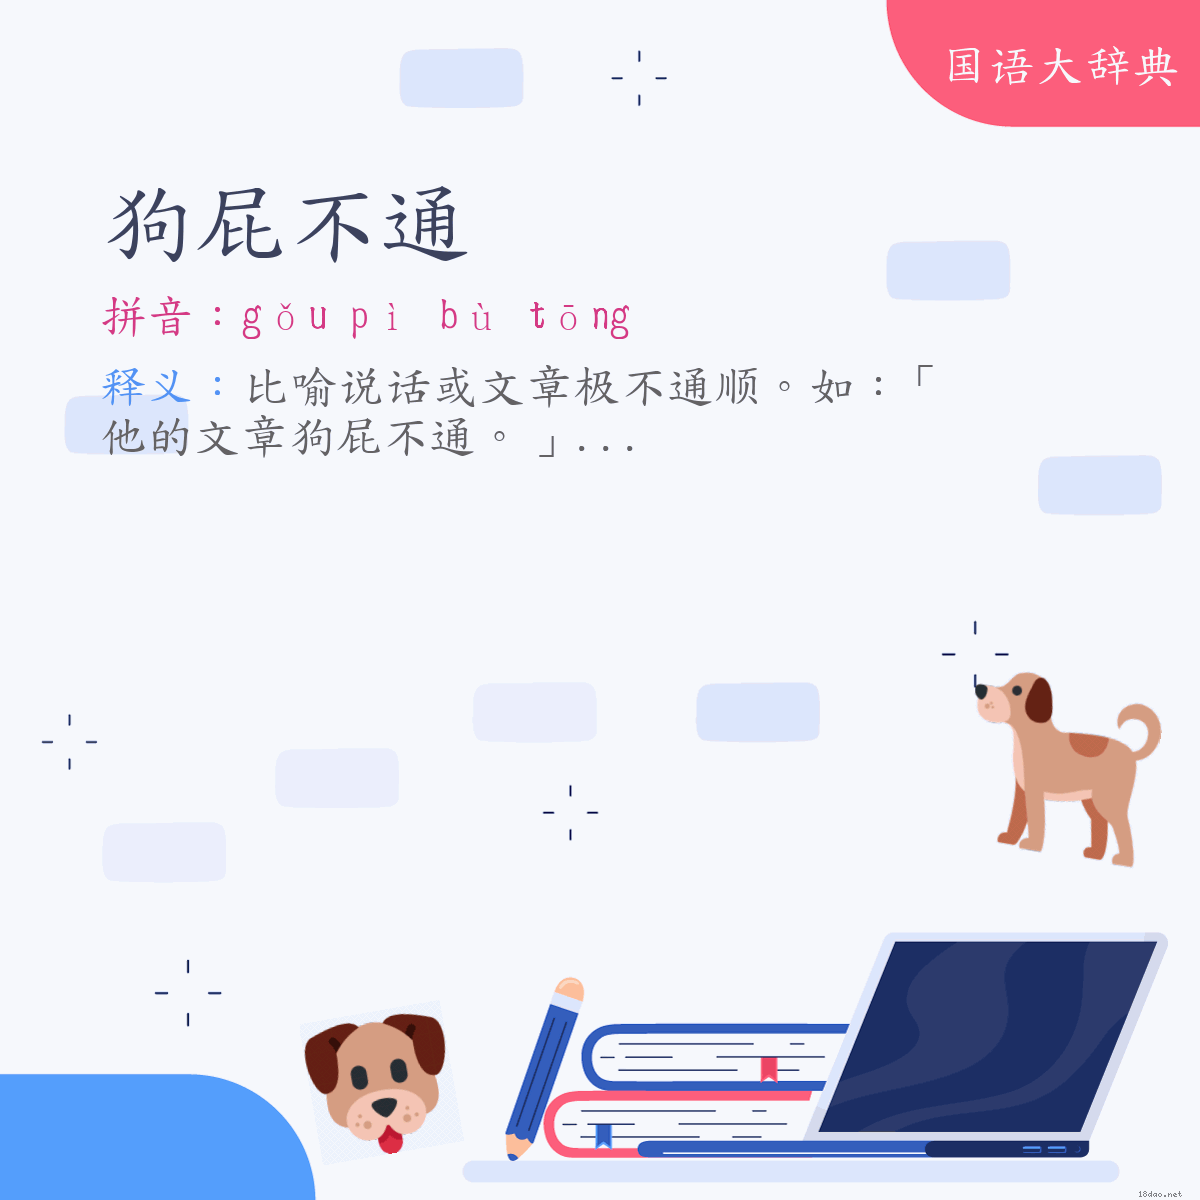 词语:狗屁不通 (注音:ㄍㄡˇ　ㄆㄧˋ　ㄅㄨˋ　ㄊㄨㄥ)